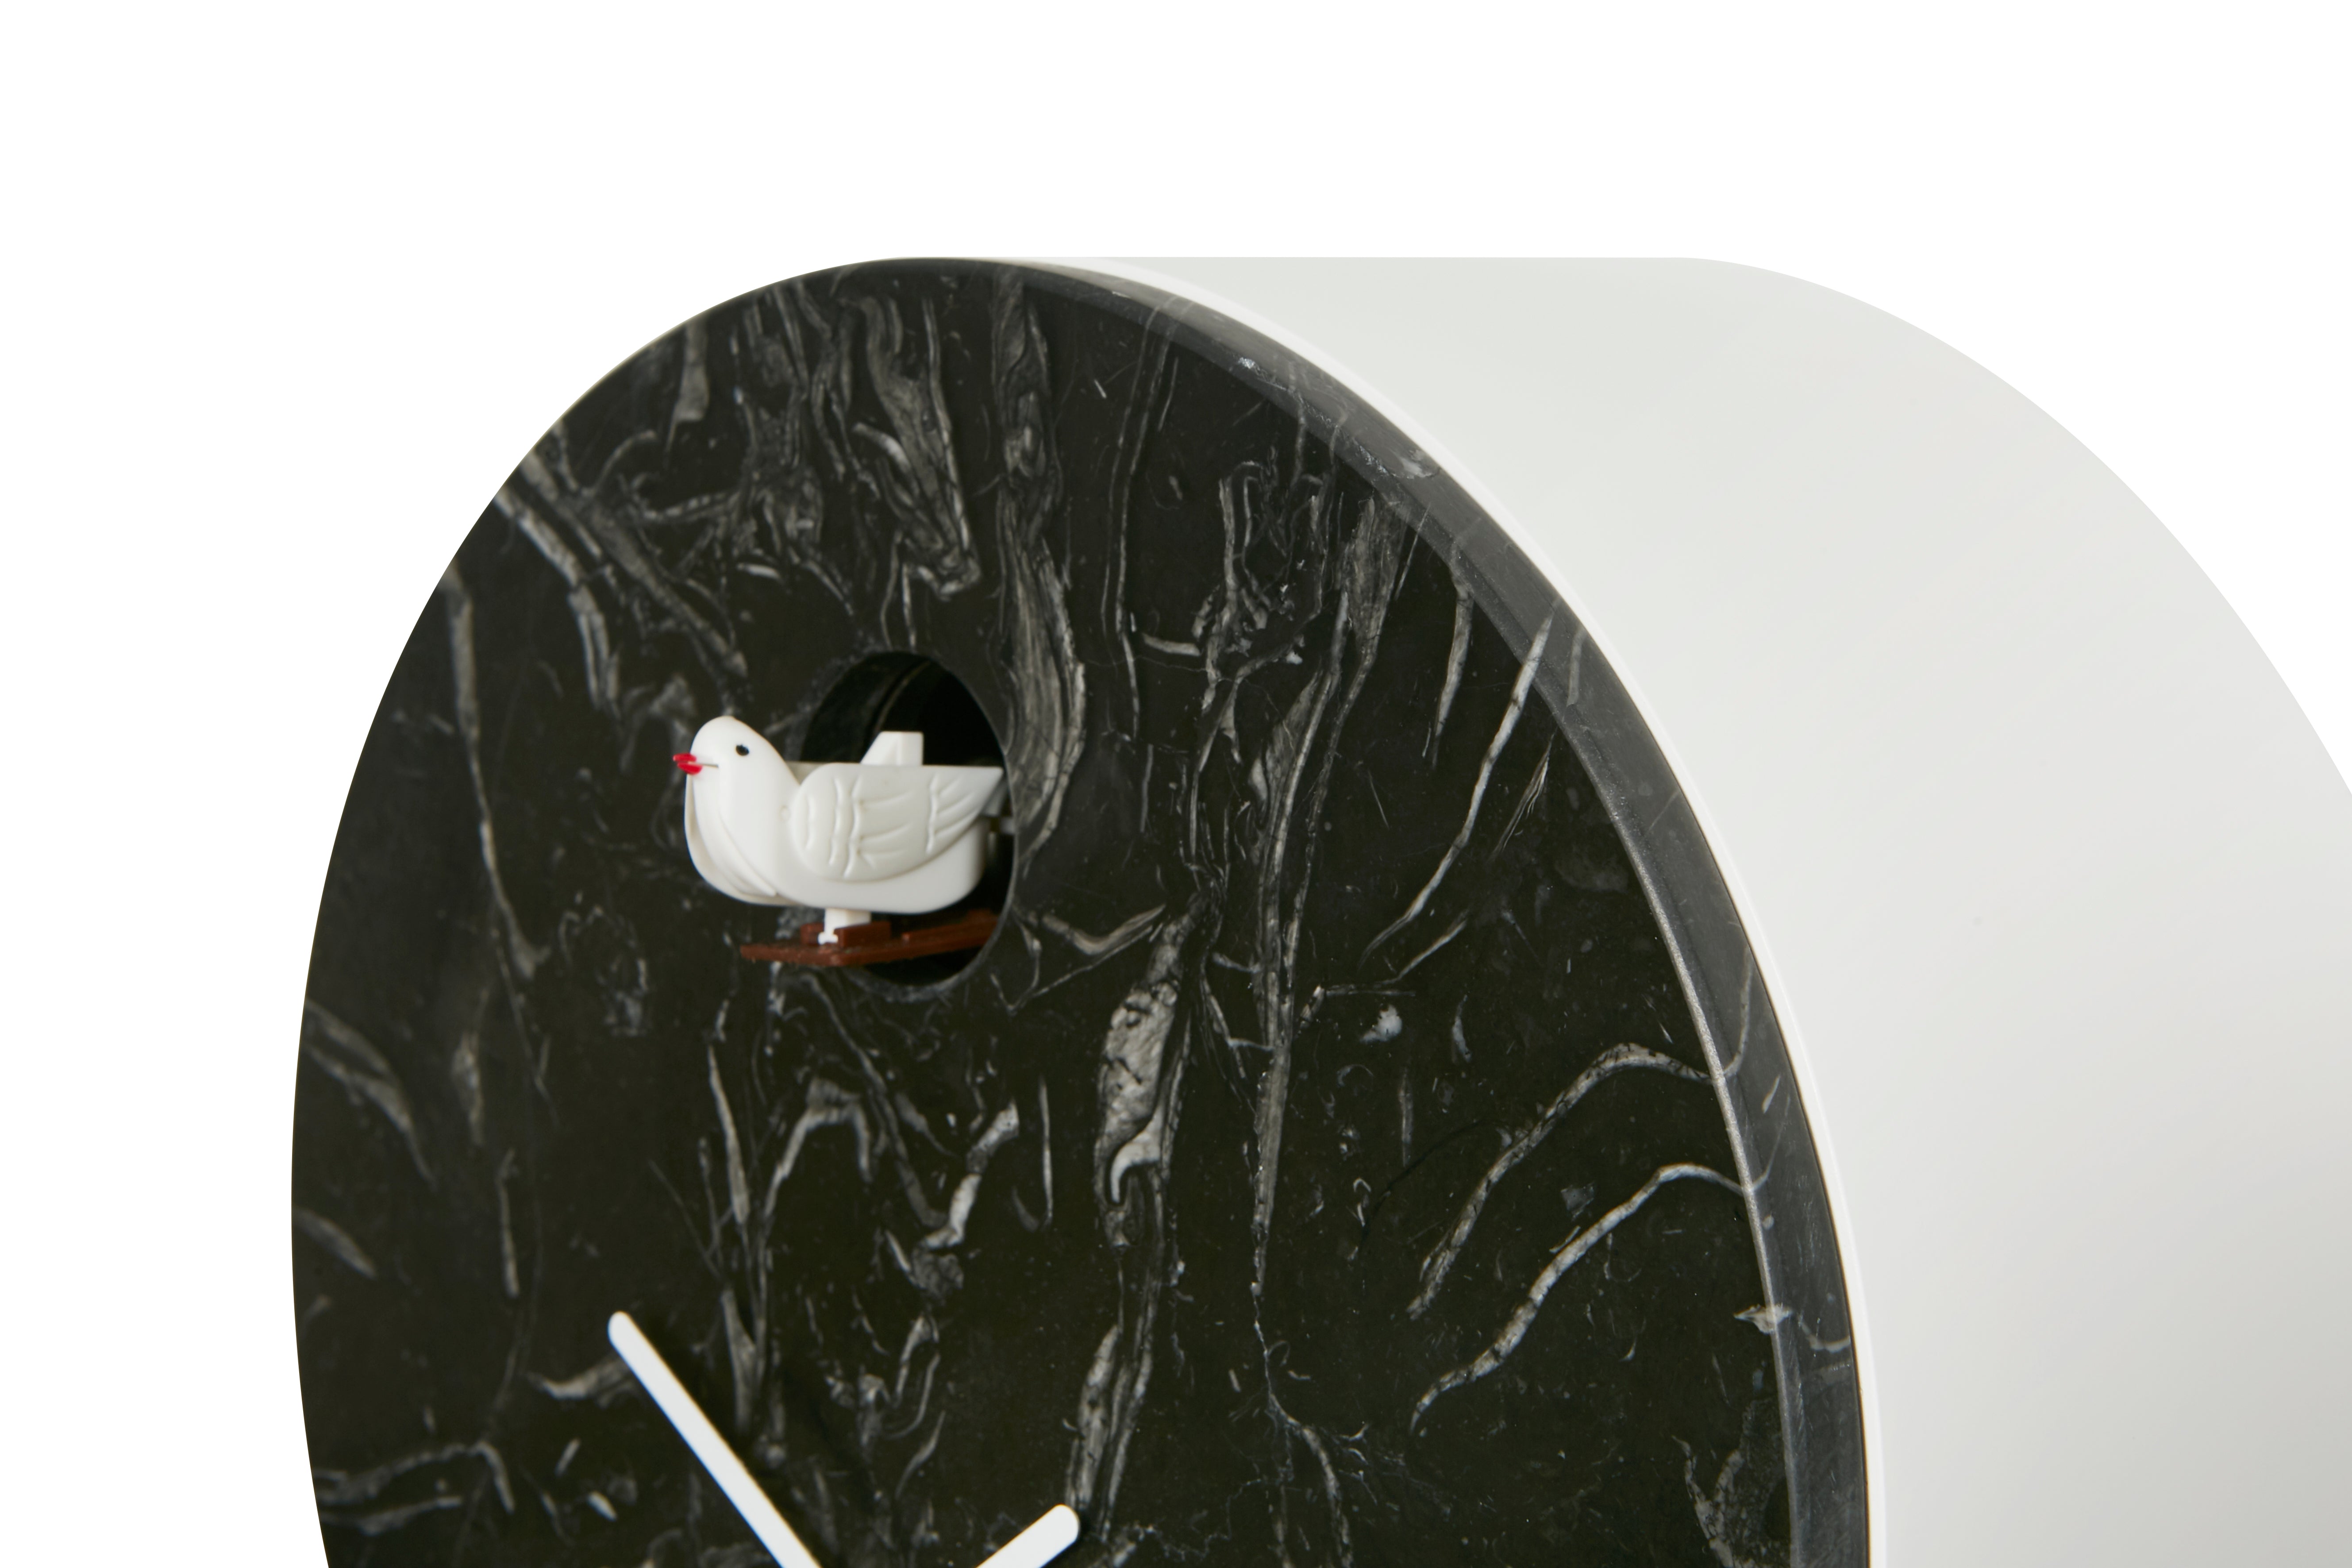 Domeniconi Cioni Cuckoo Clock, Nero Marquina